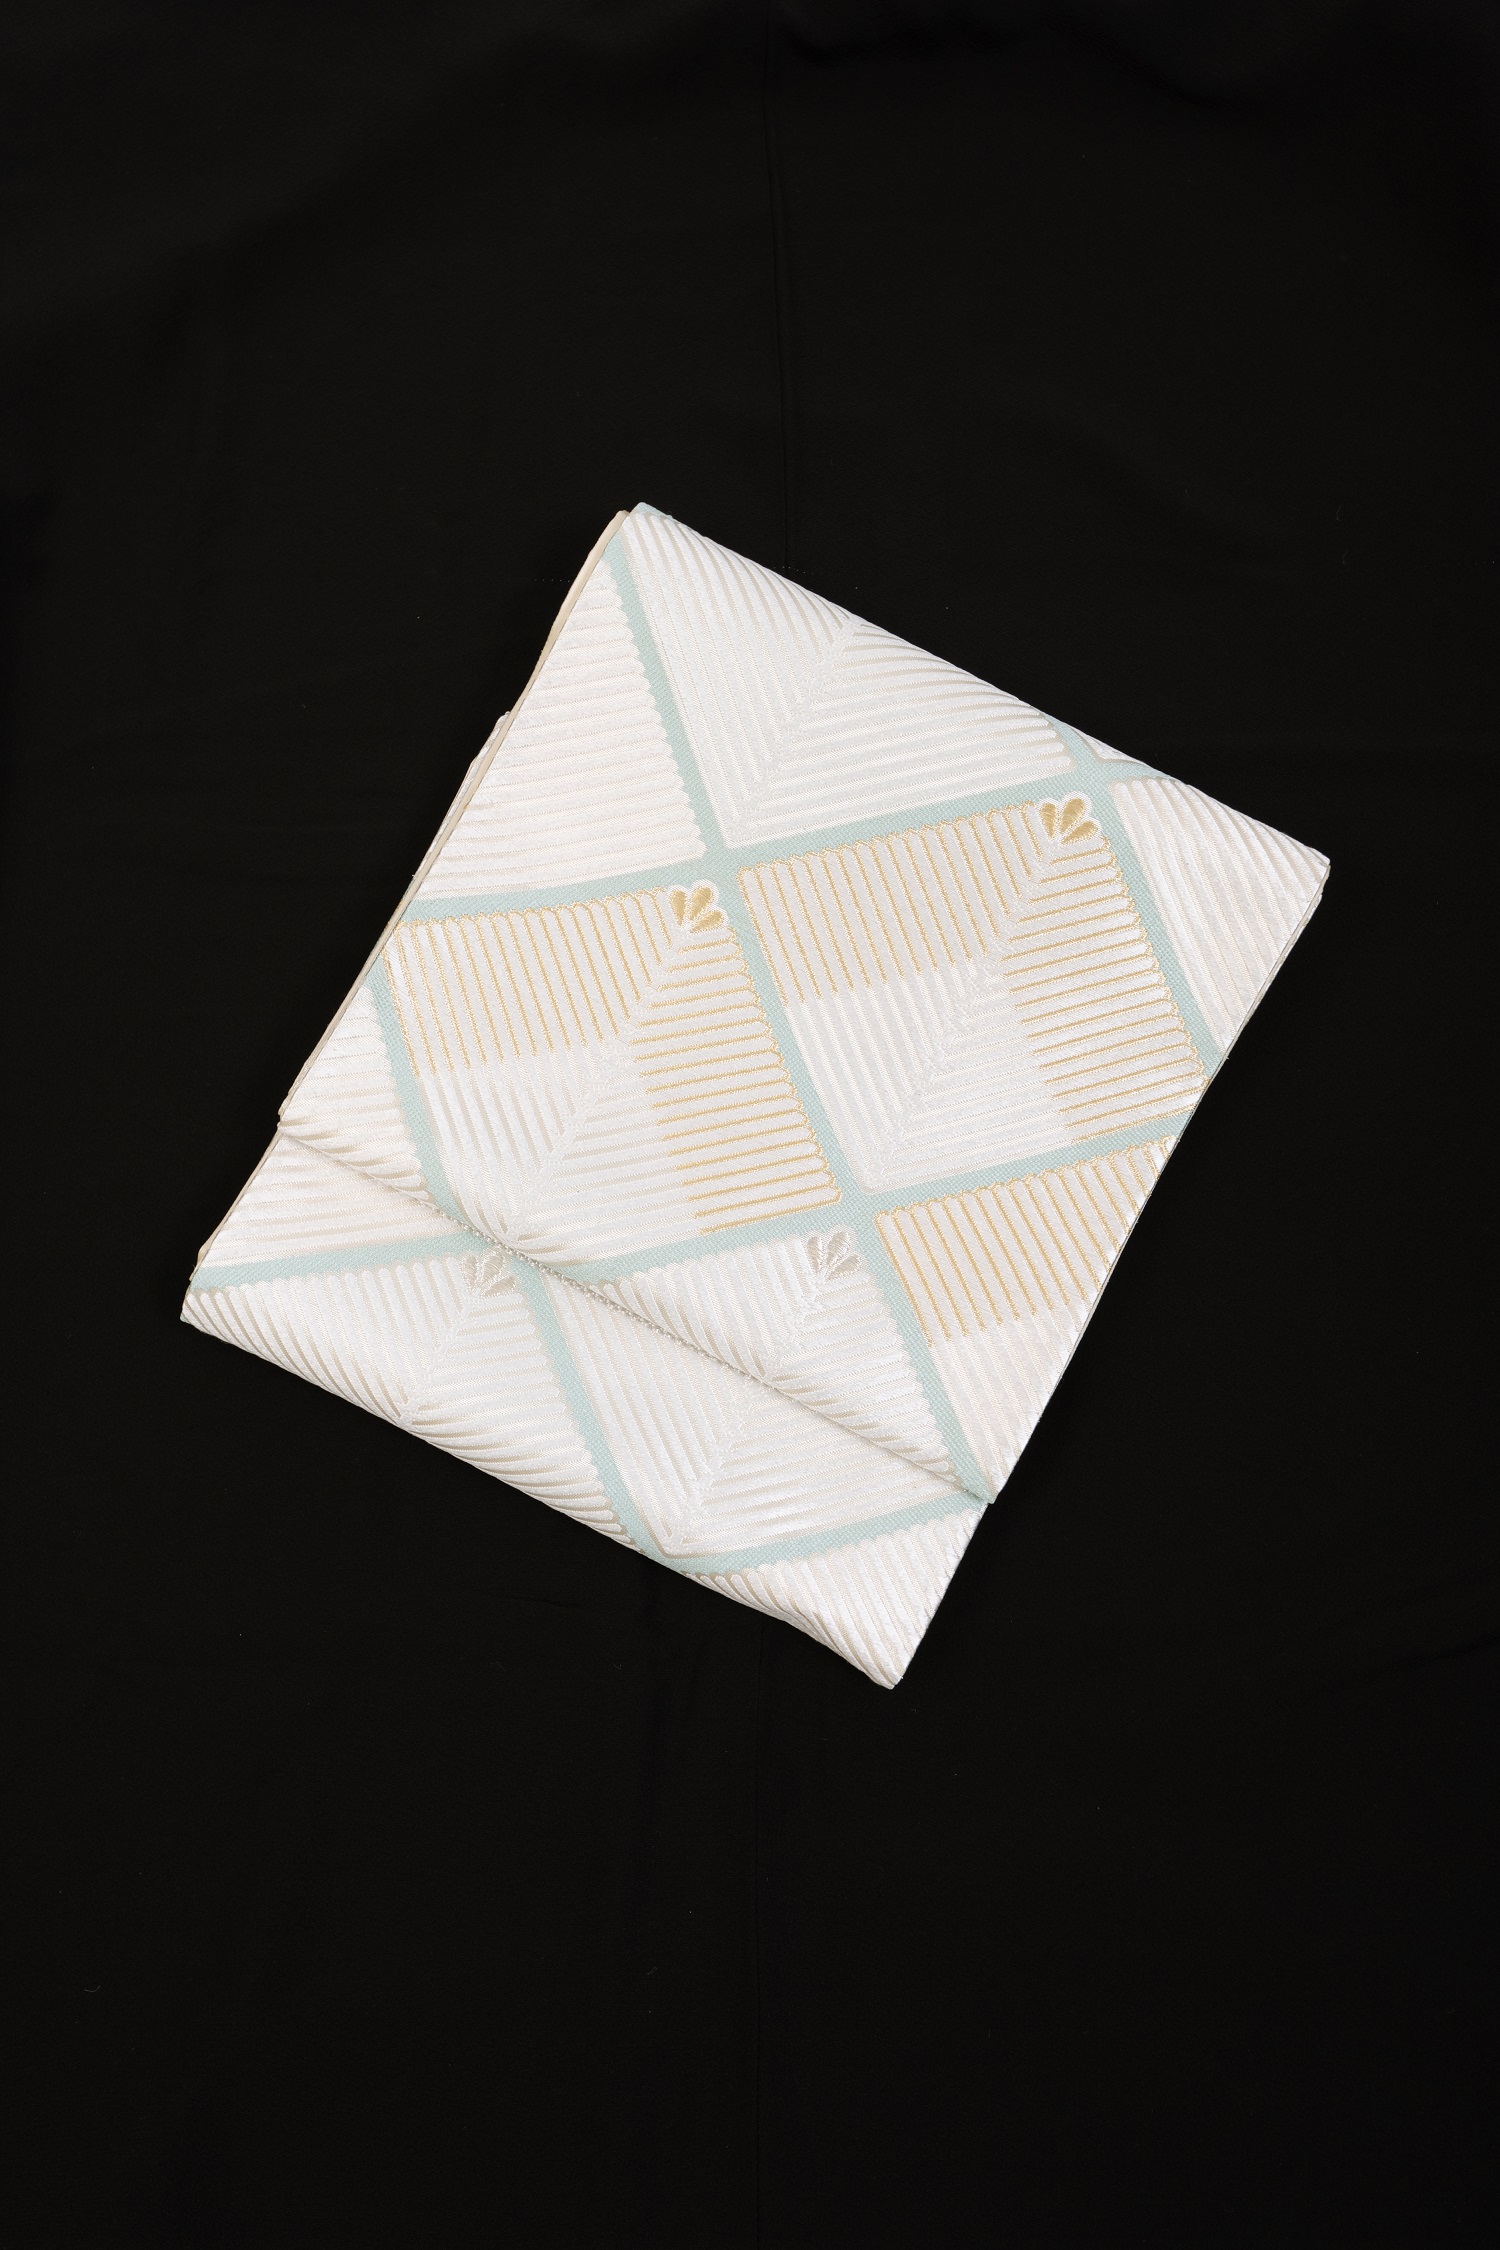 【高級帯レンタル】obi-363 高級袋帯レンタル「菱・松葉・河合美術織物」 